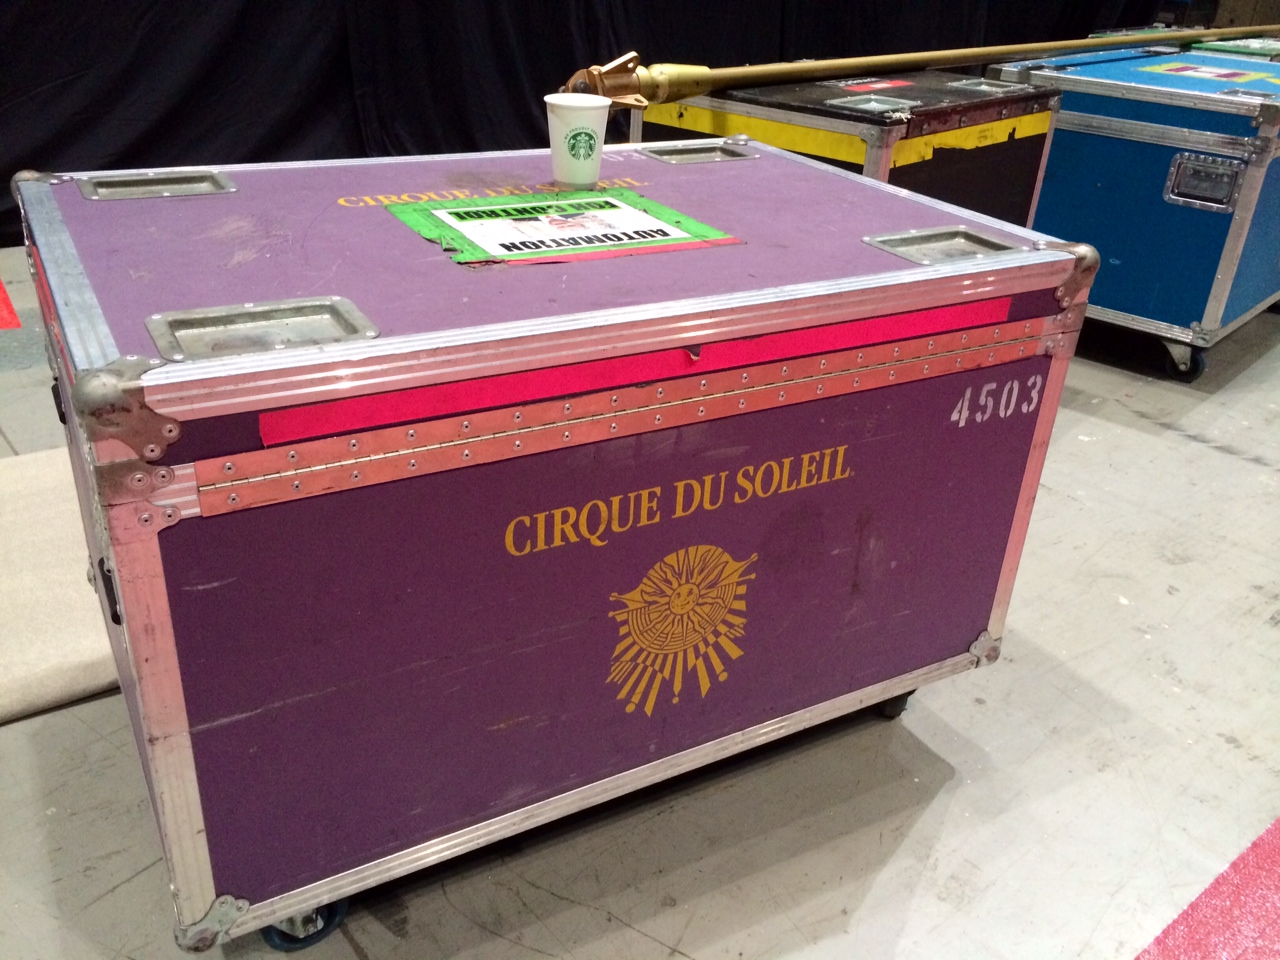 BACKSTAGE PASS: Michael Jackson Cirque du Soleil Tour 